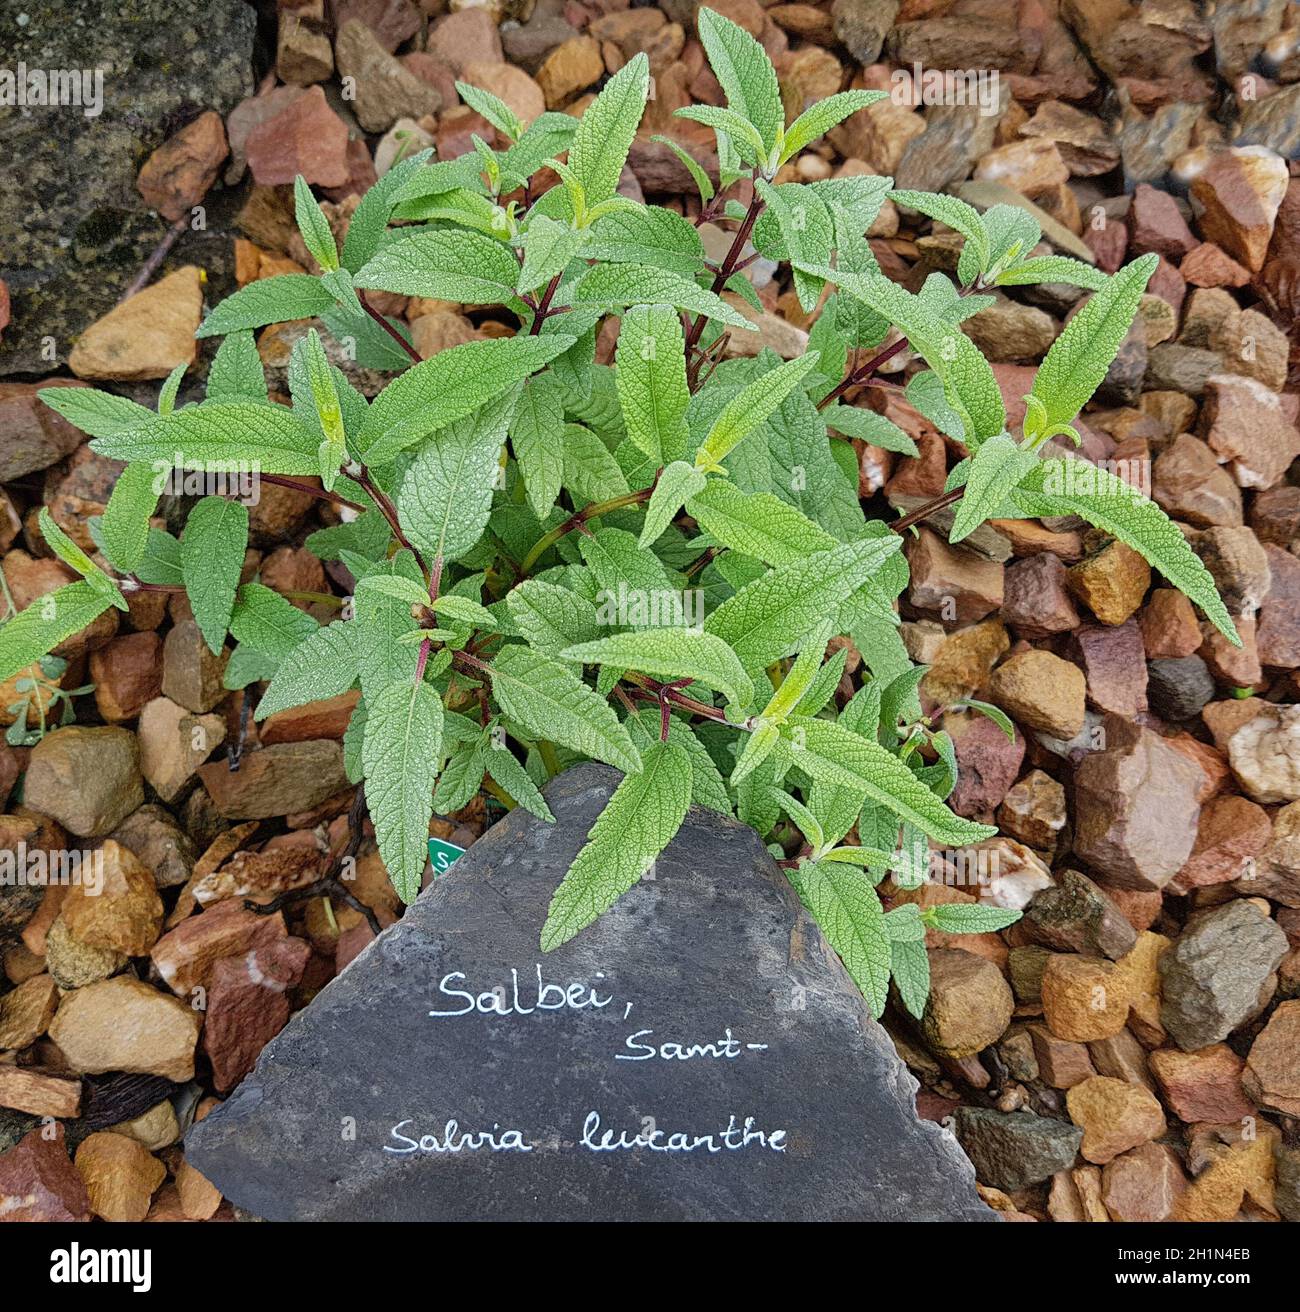 Salbei, samt-, Salvia, ist eine wichtige leucanhe Heilpflanze Duftpflanze und eine mit blauen Blueten. Sie ist eine schoene Staude und wird auch dans de Banque D'Images